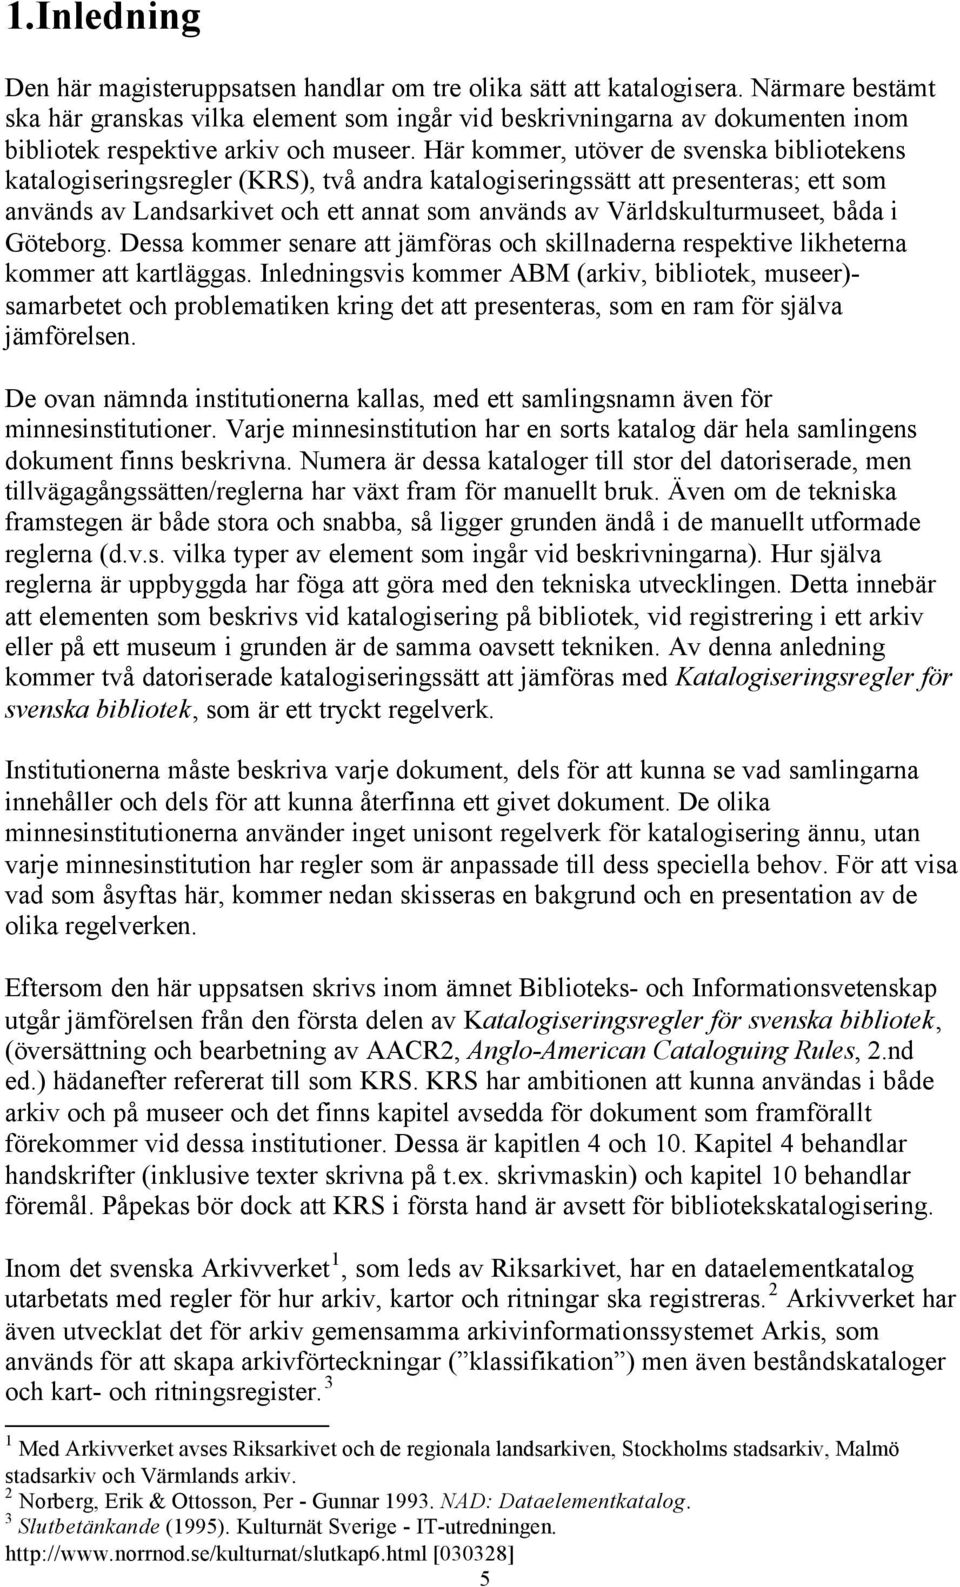 Här kommer, utöver de svenska bibliotekens katalogiseringsregler (KRS), två andra katalogiseringssätt att presenteras; ett som används av Landsarkivet och ett annat som används av Världskulturmuseet,